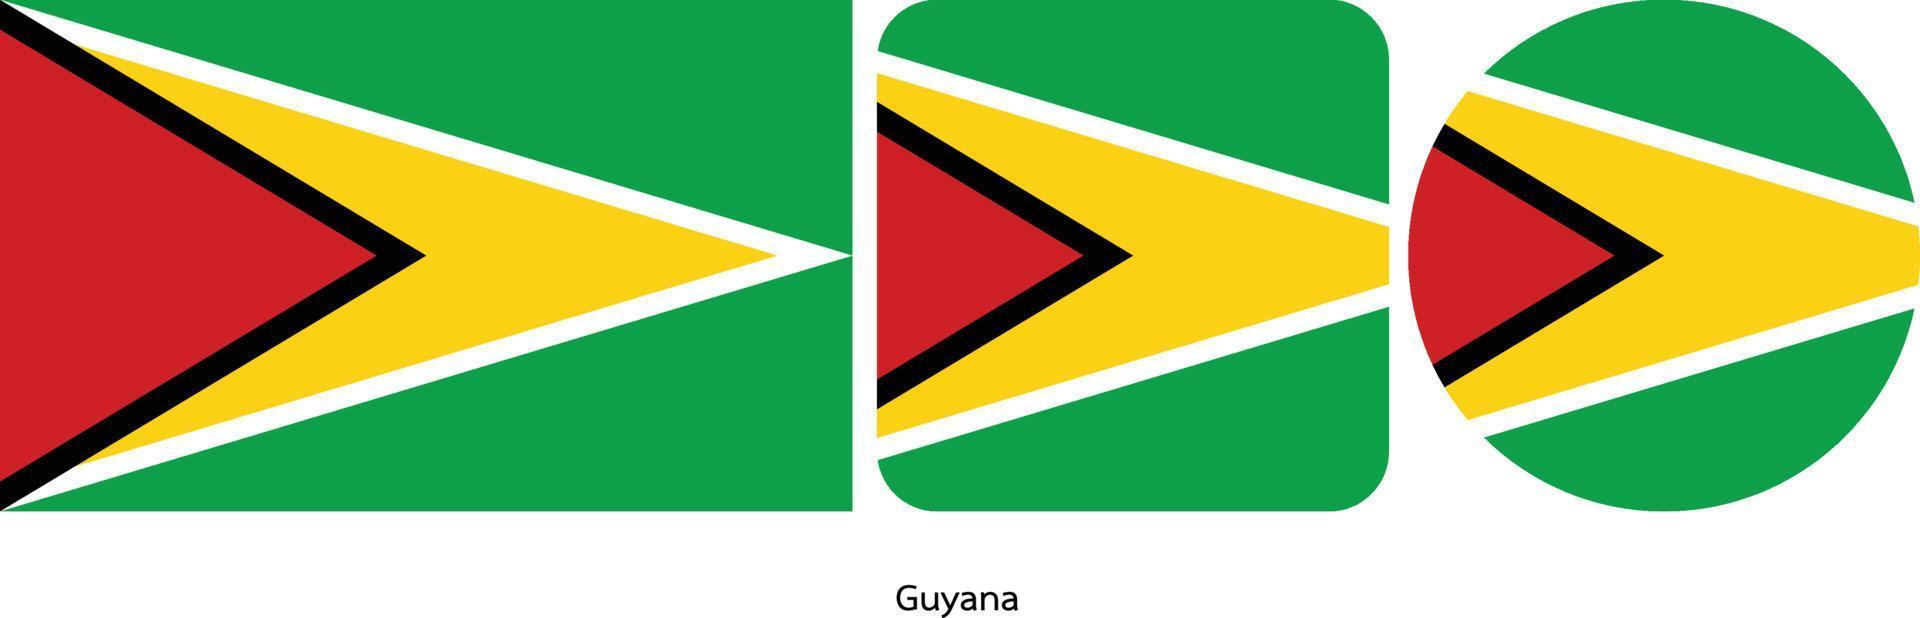 Guyana flagga, vektorillustration vektor